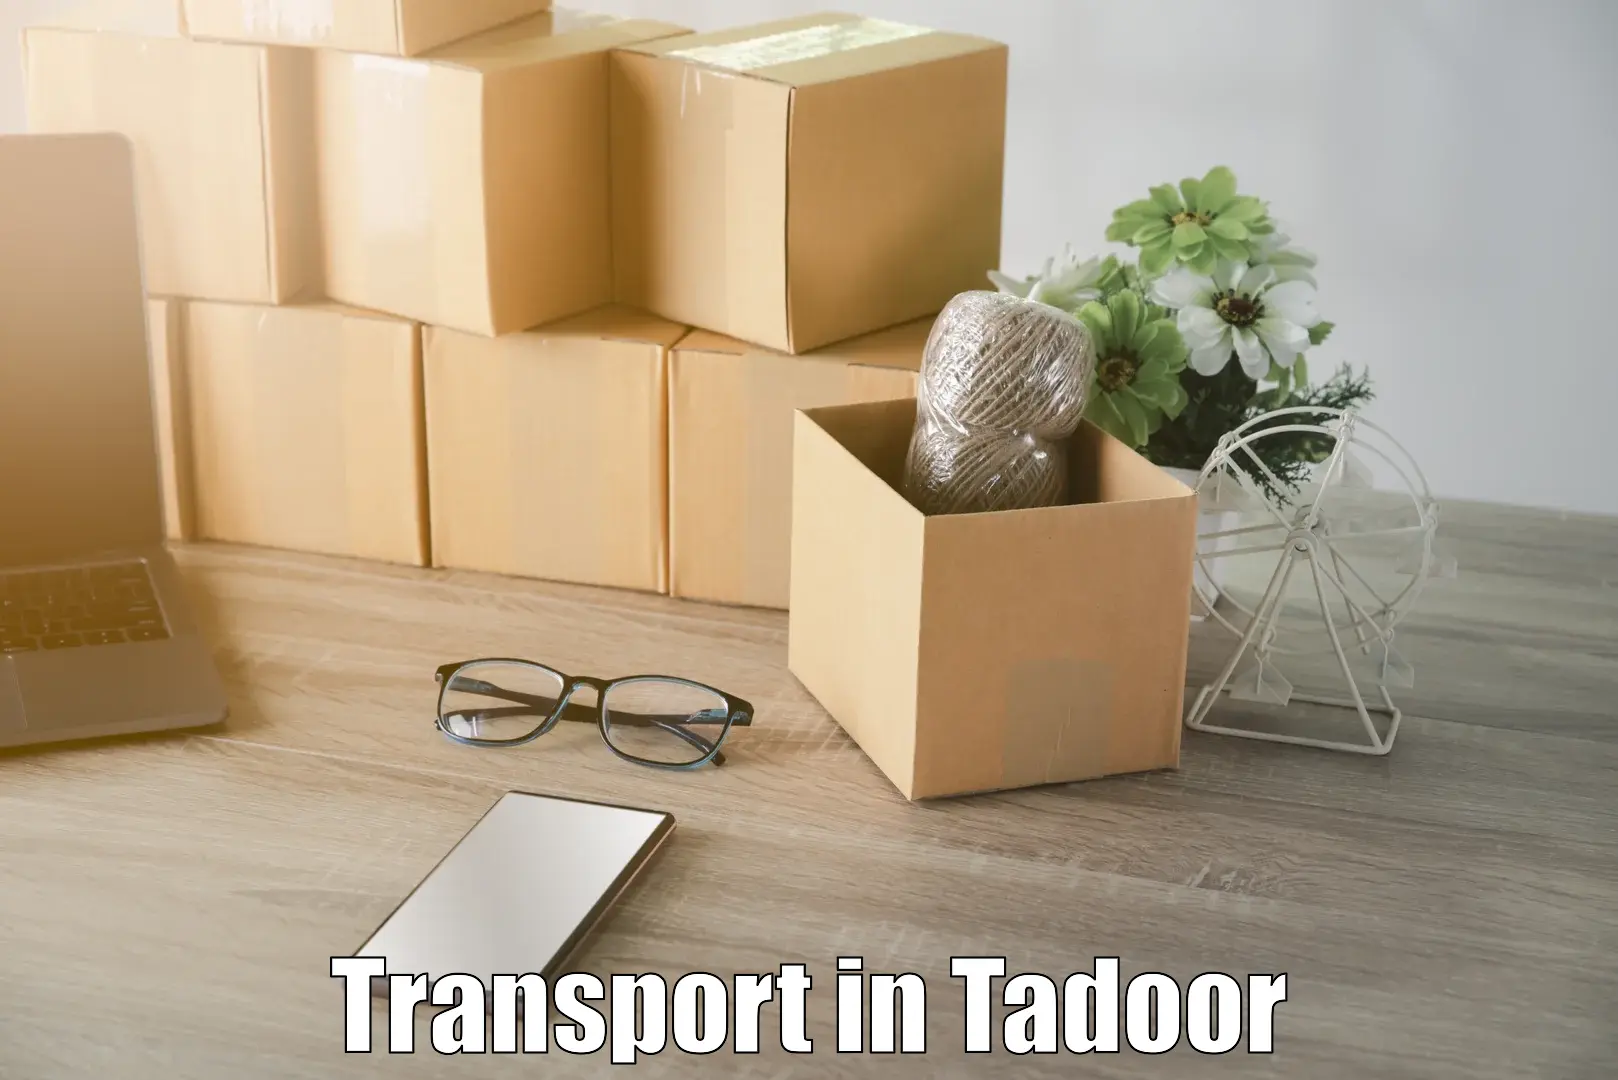 Goods transport services in Tadoor